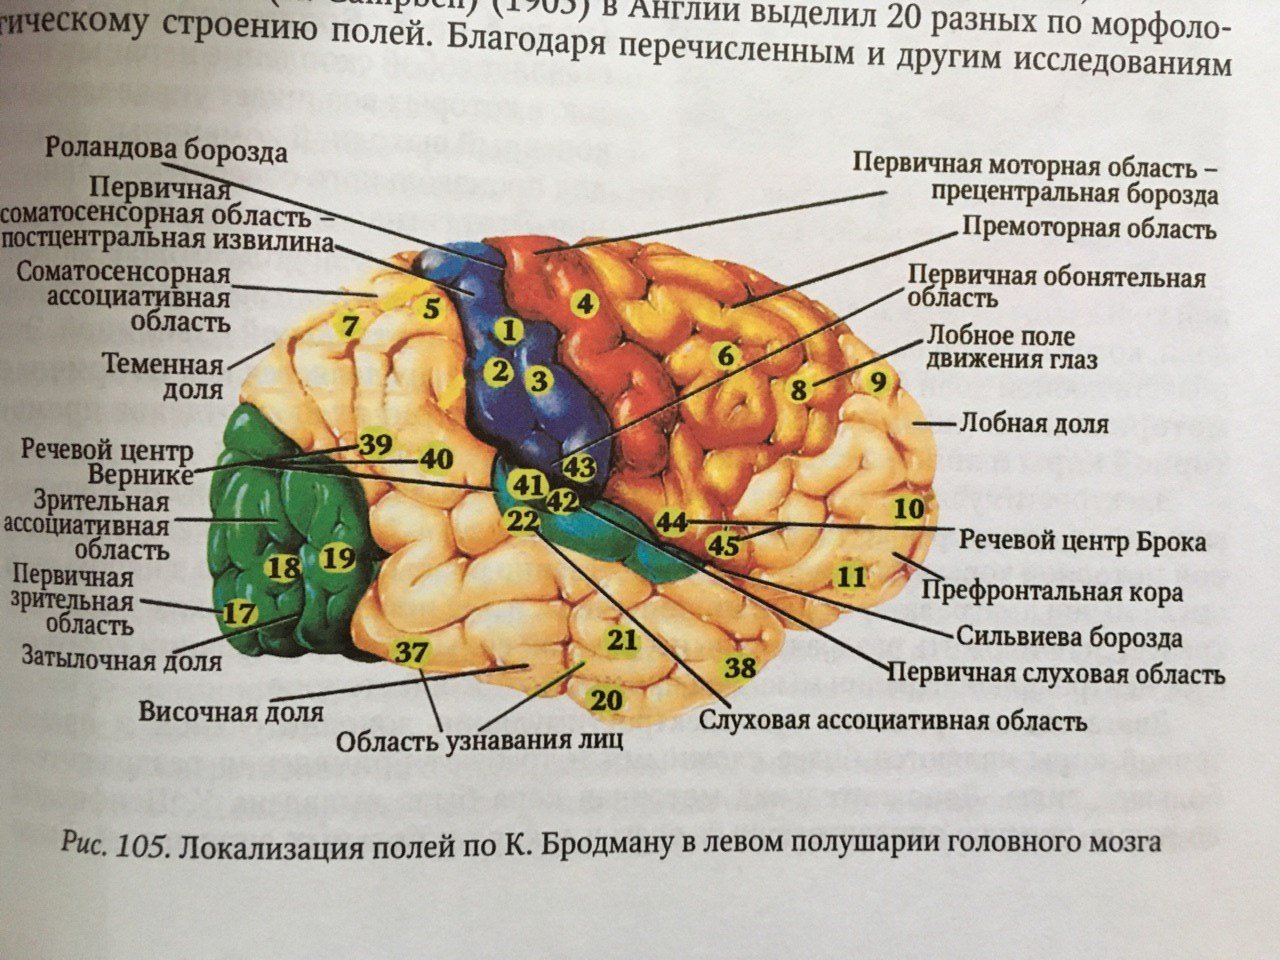 Височная функция мозга. Сильвиева борозда мозга. Головной мозг борозды роландова. Доли борозды и извилины мозга. Борозды доли извилины коры головного мозга.